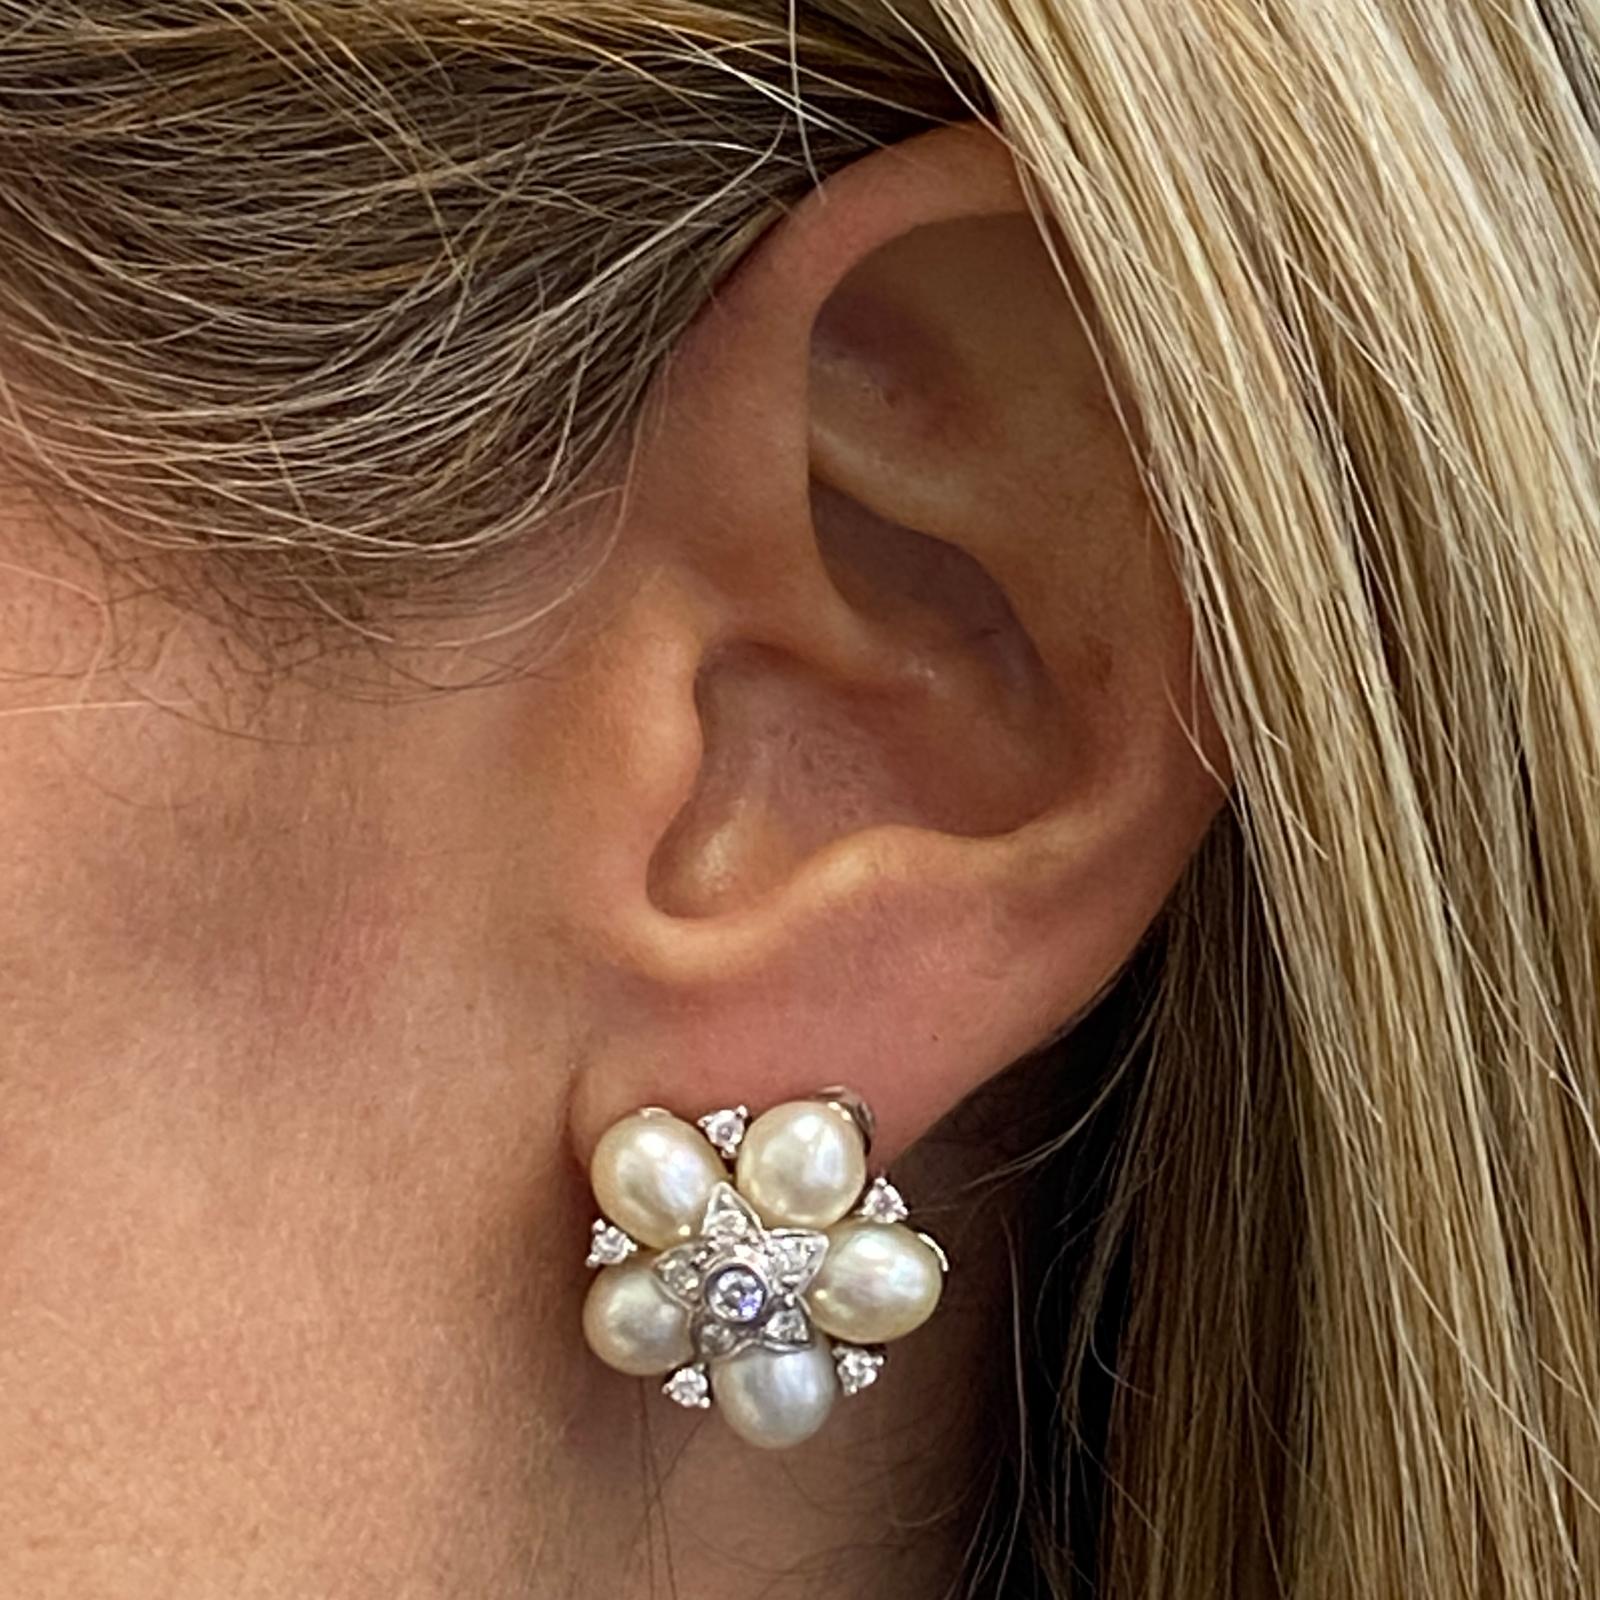 Boucles d'oreille en perles de diamant façonnées en or blanc 18 carats. Les boucles d'oreilles sont ornées de diamants ronds de taille brillant d'un poids total de 0,50 carat, de couleur G-H et de pureté VS. Les boucles d'oreilles sont également